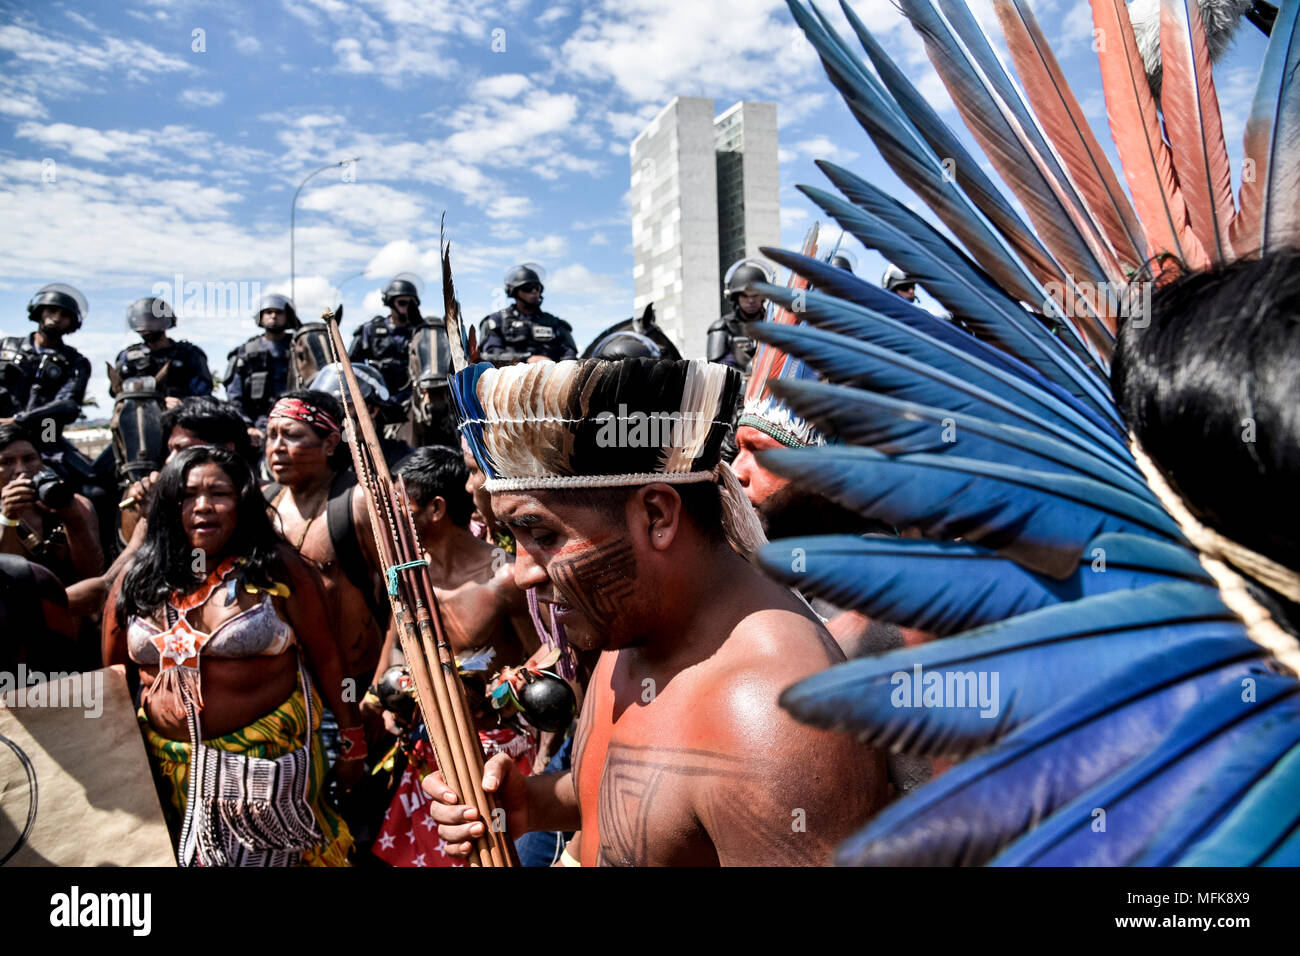 26 aprile 2018, Brasile Brasilia: popoli indigeni in marcia per il riconoscimento delle terre indigene di diritti. Diversi gruppi etnici preso parte al processo. Un progetto ufficiale per la designazione dei territori indigeni è attualmente in fase di discussione. Foto: Pablo Abarenga/dpa Foto Stock